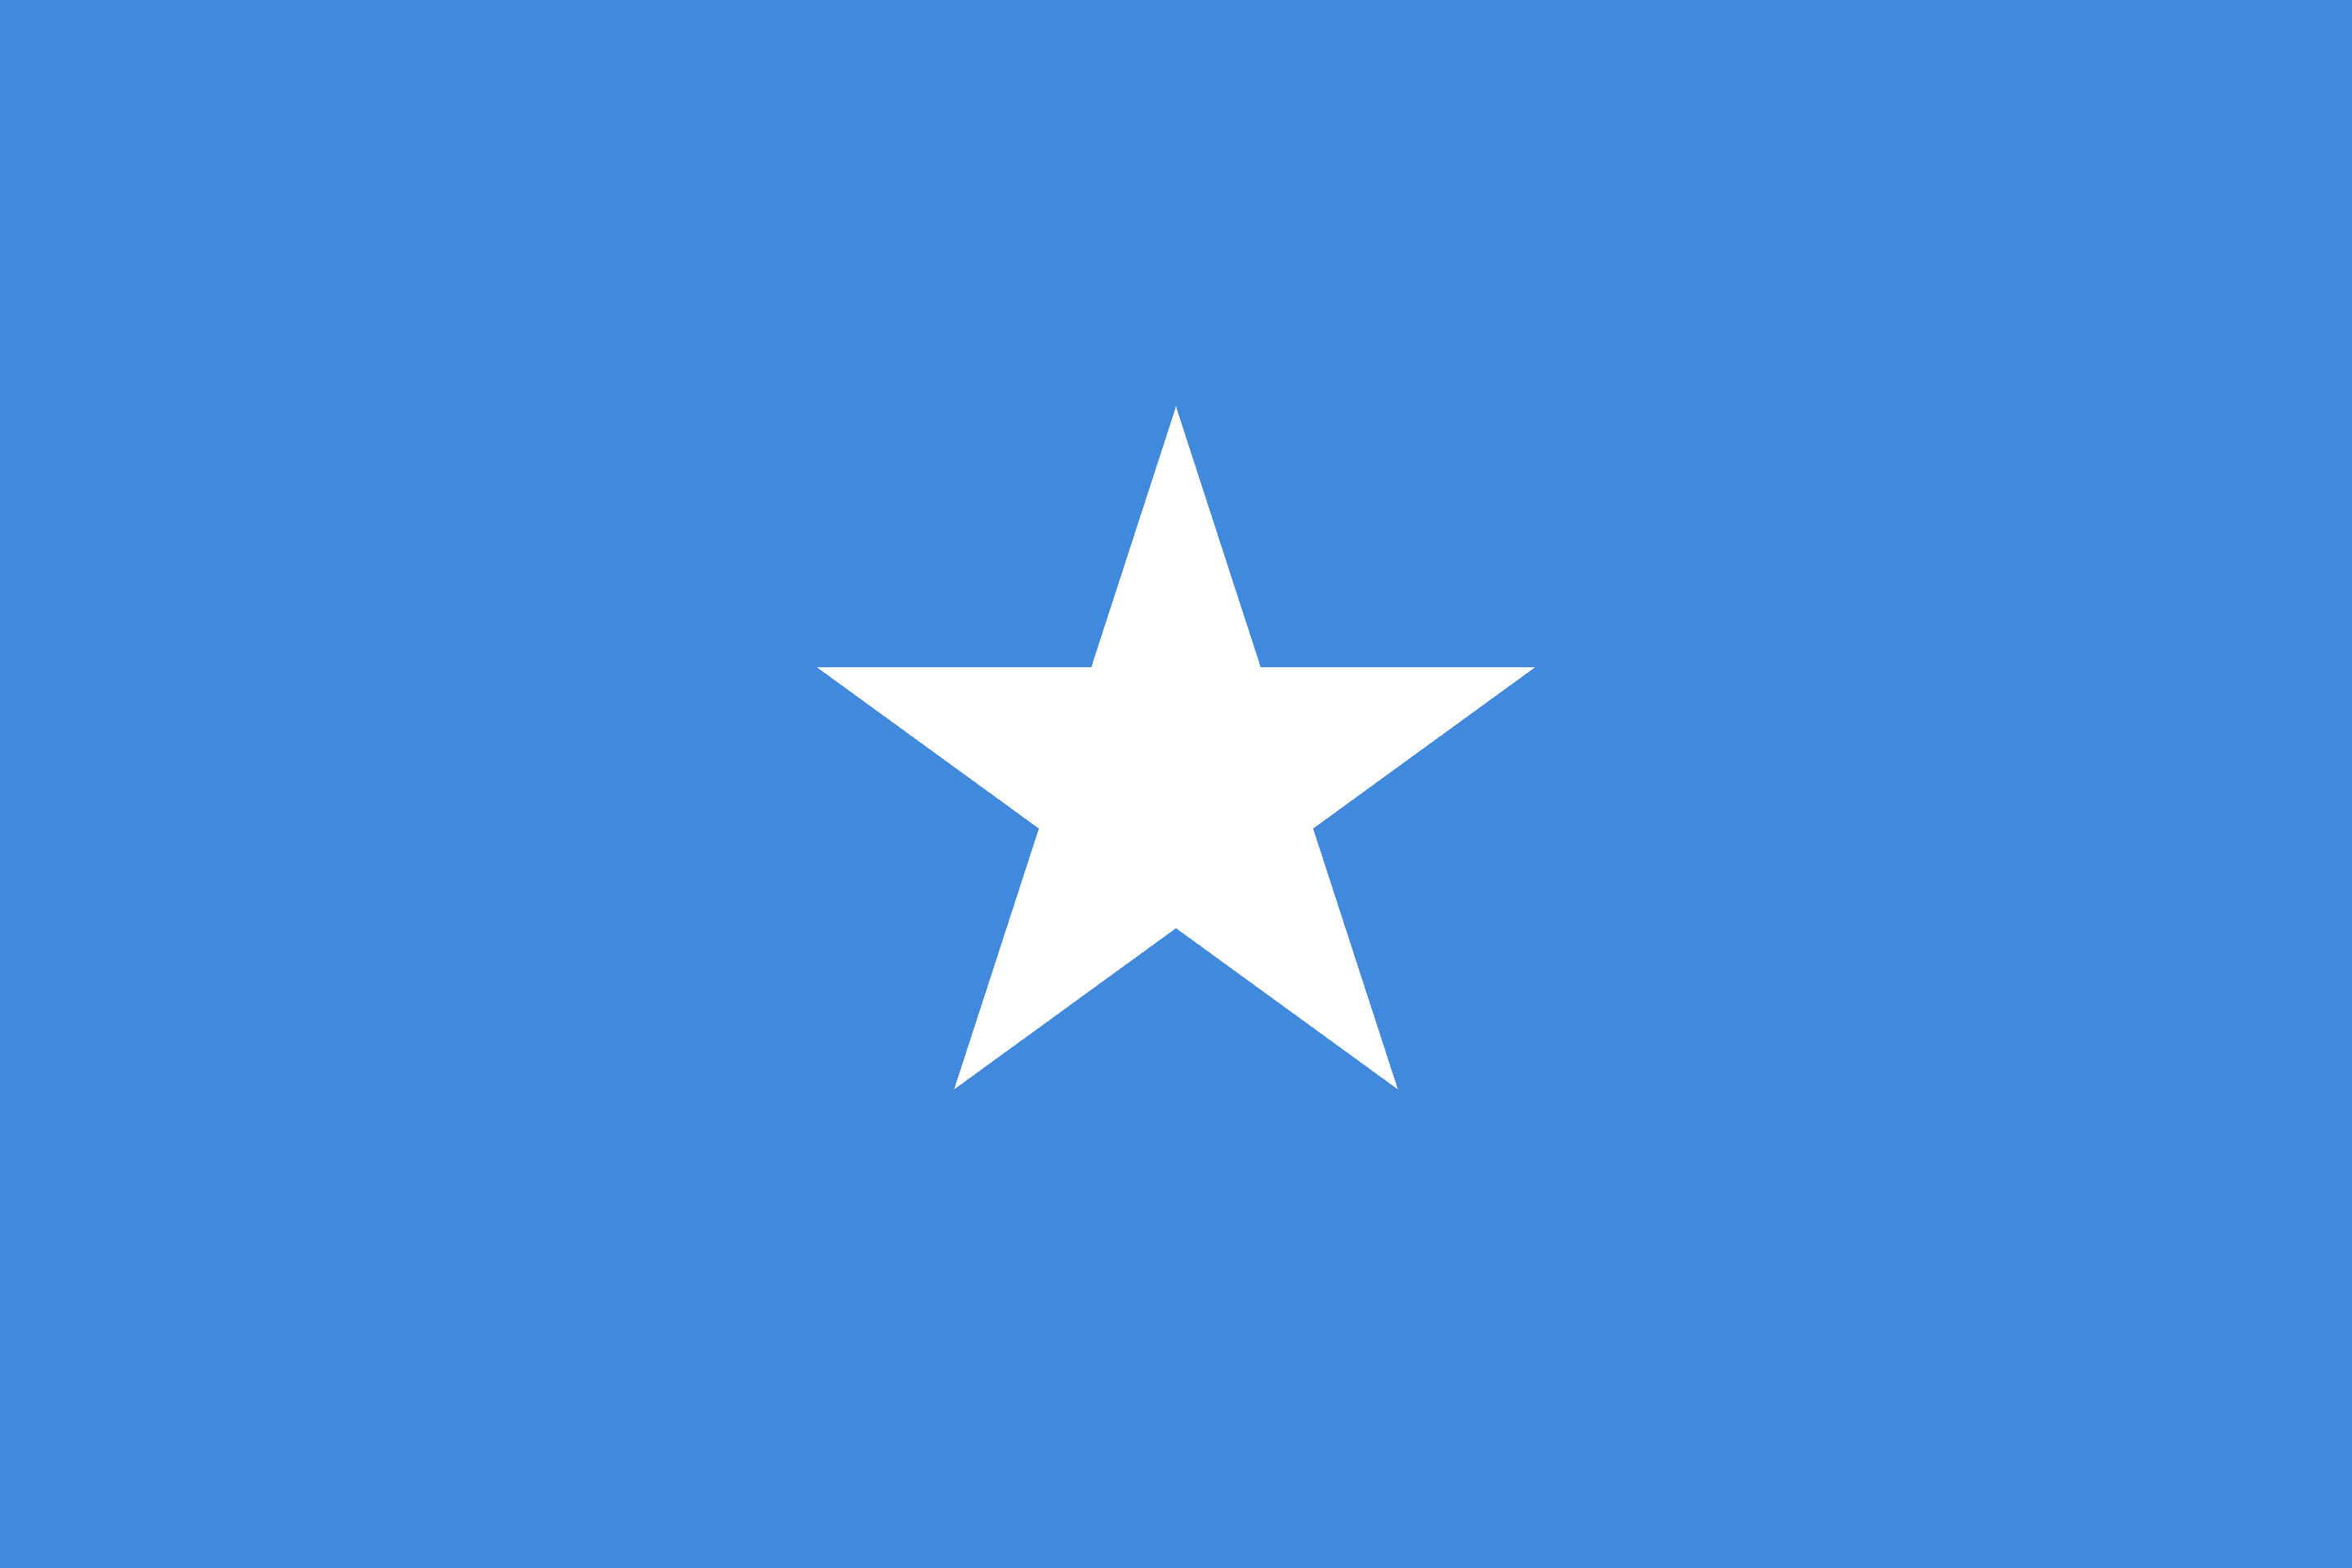 Drone Laws in Somalia